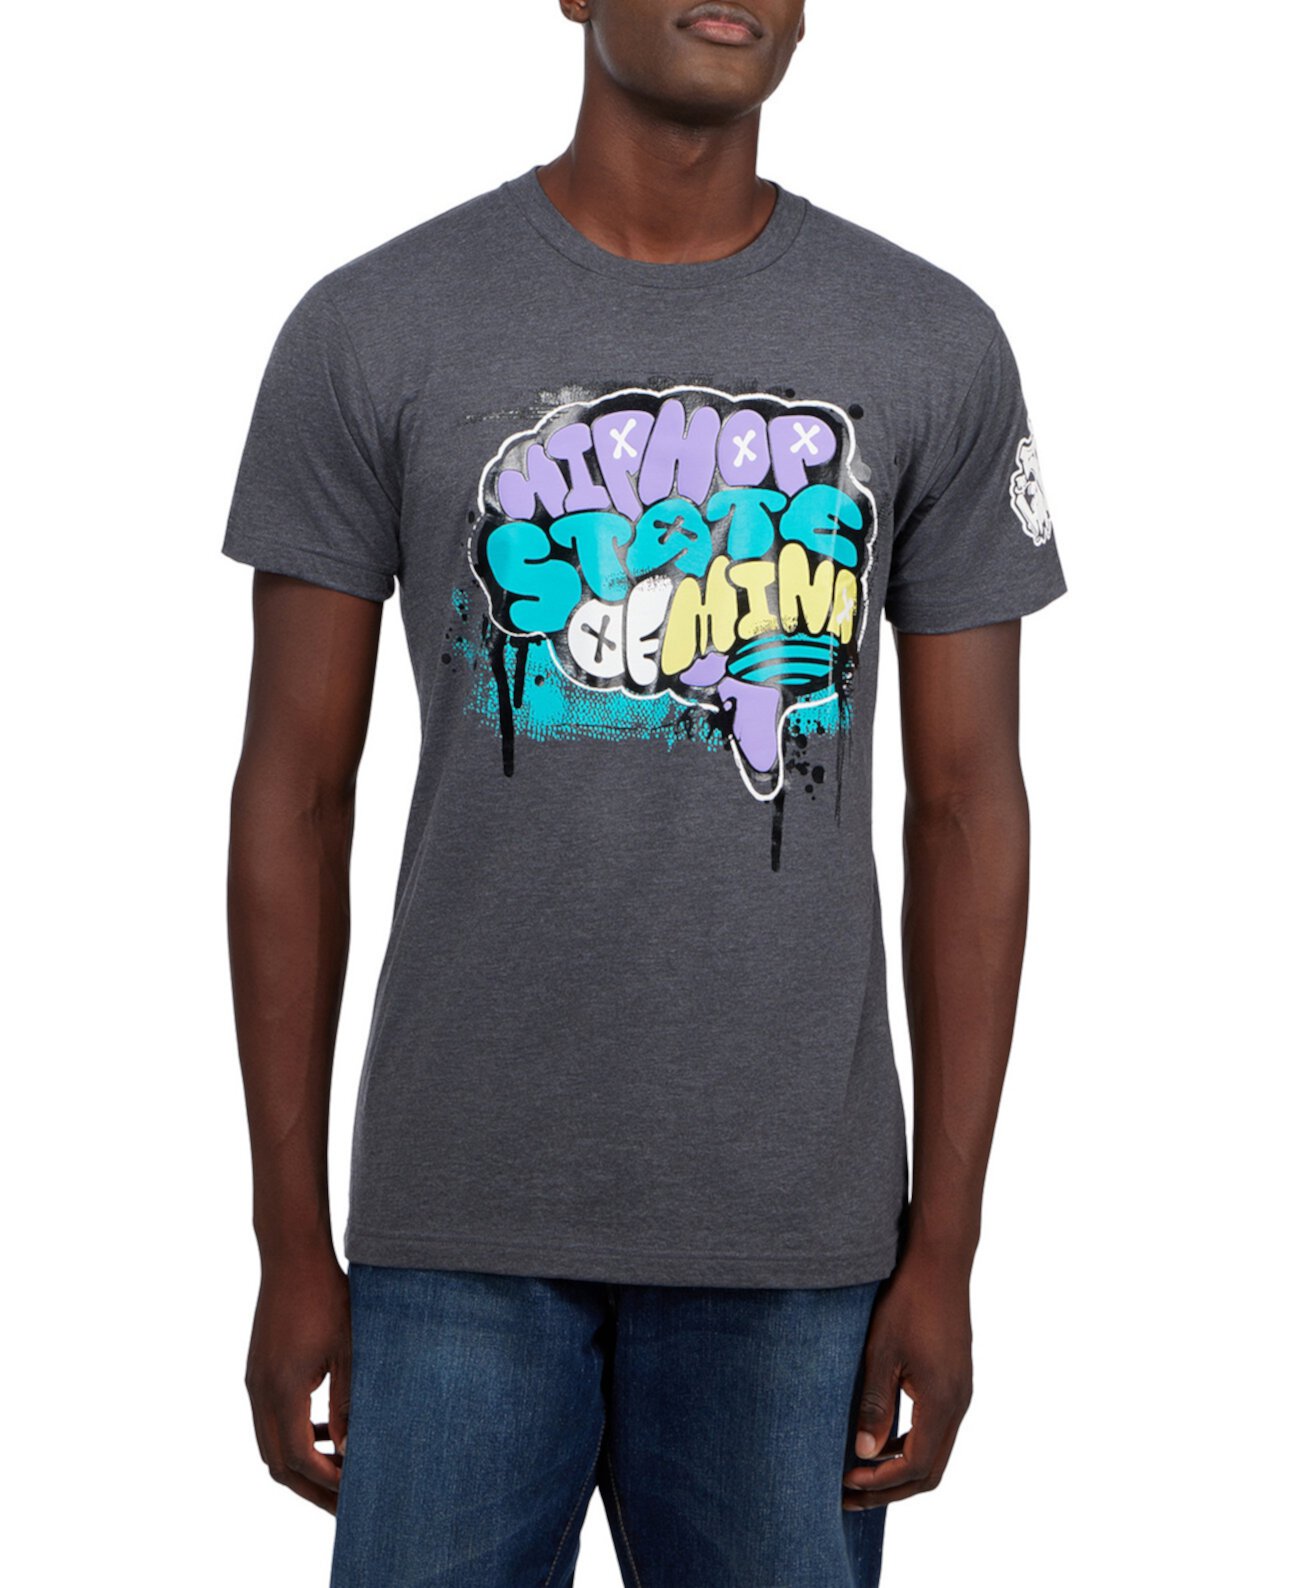 Мужская футболка с рисунком State of Mind в честь 50-летнего юбилея хип-хопа Thread Collective